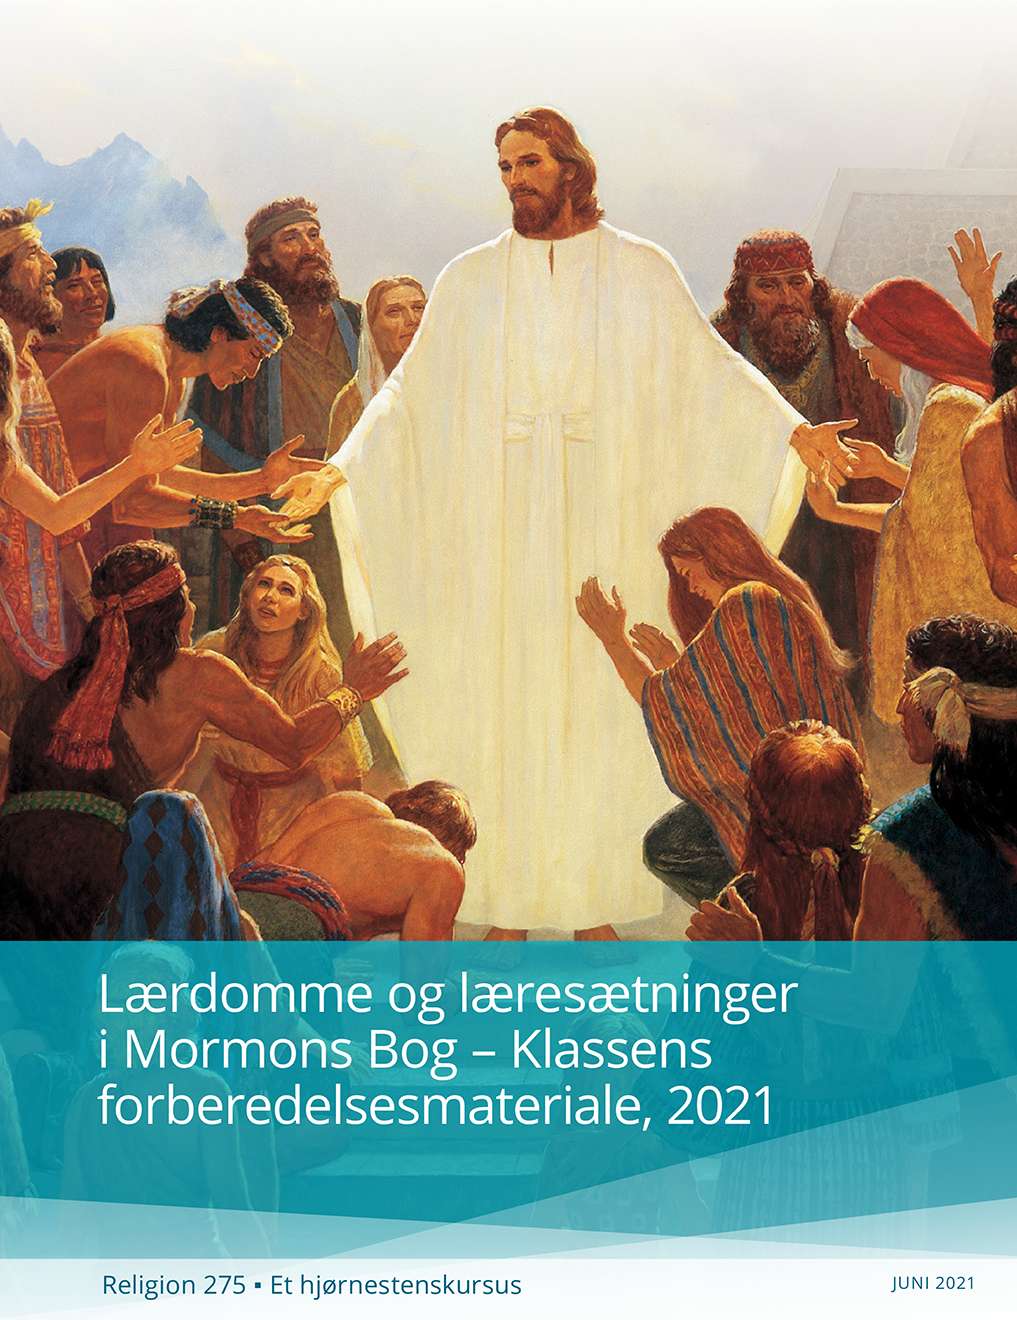 Lærdomme og læresætninger i Mormons Bog – Klassens forberedelsesmateriale